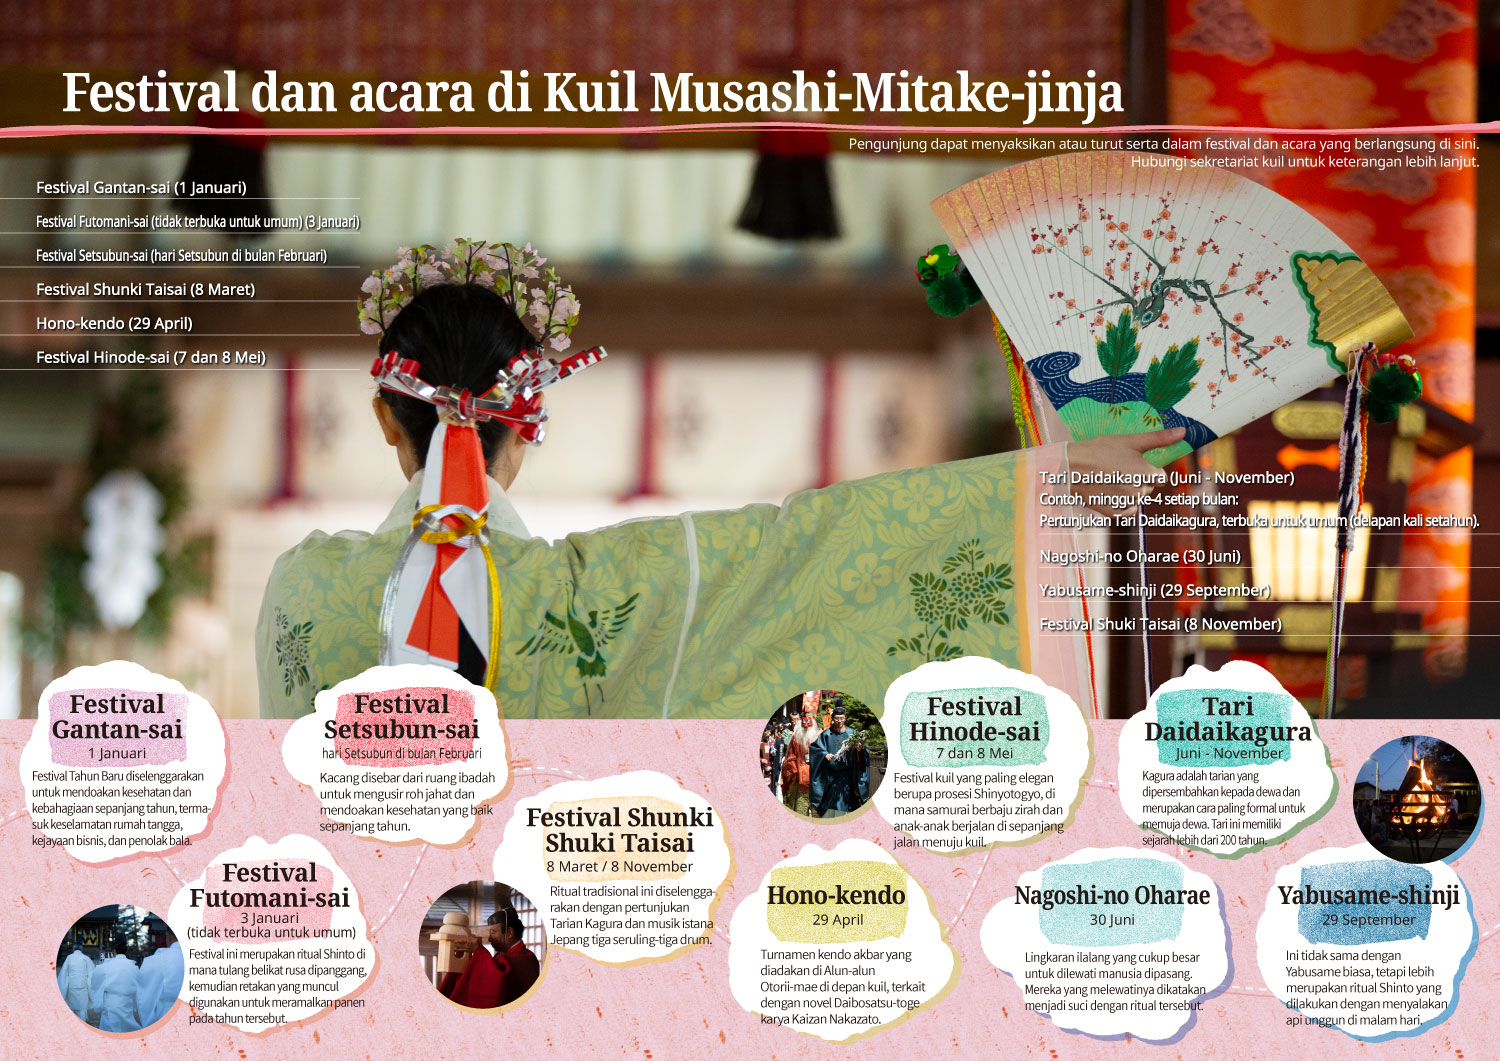 Festival dan acara di Kuil Musashi-Mitake-jinja